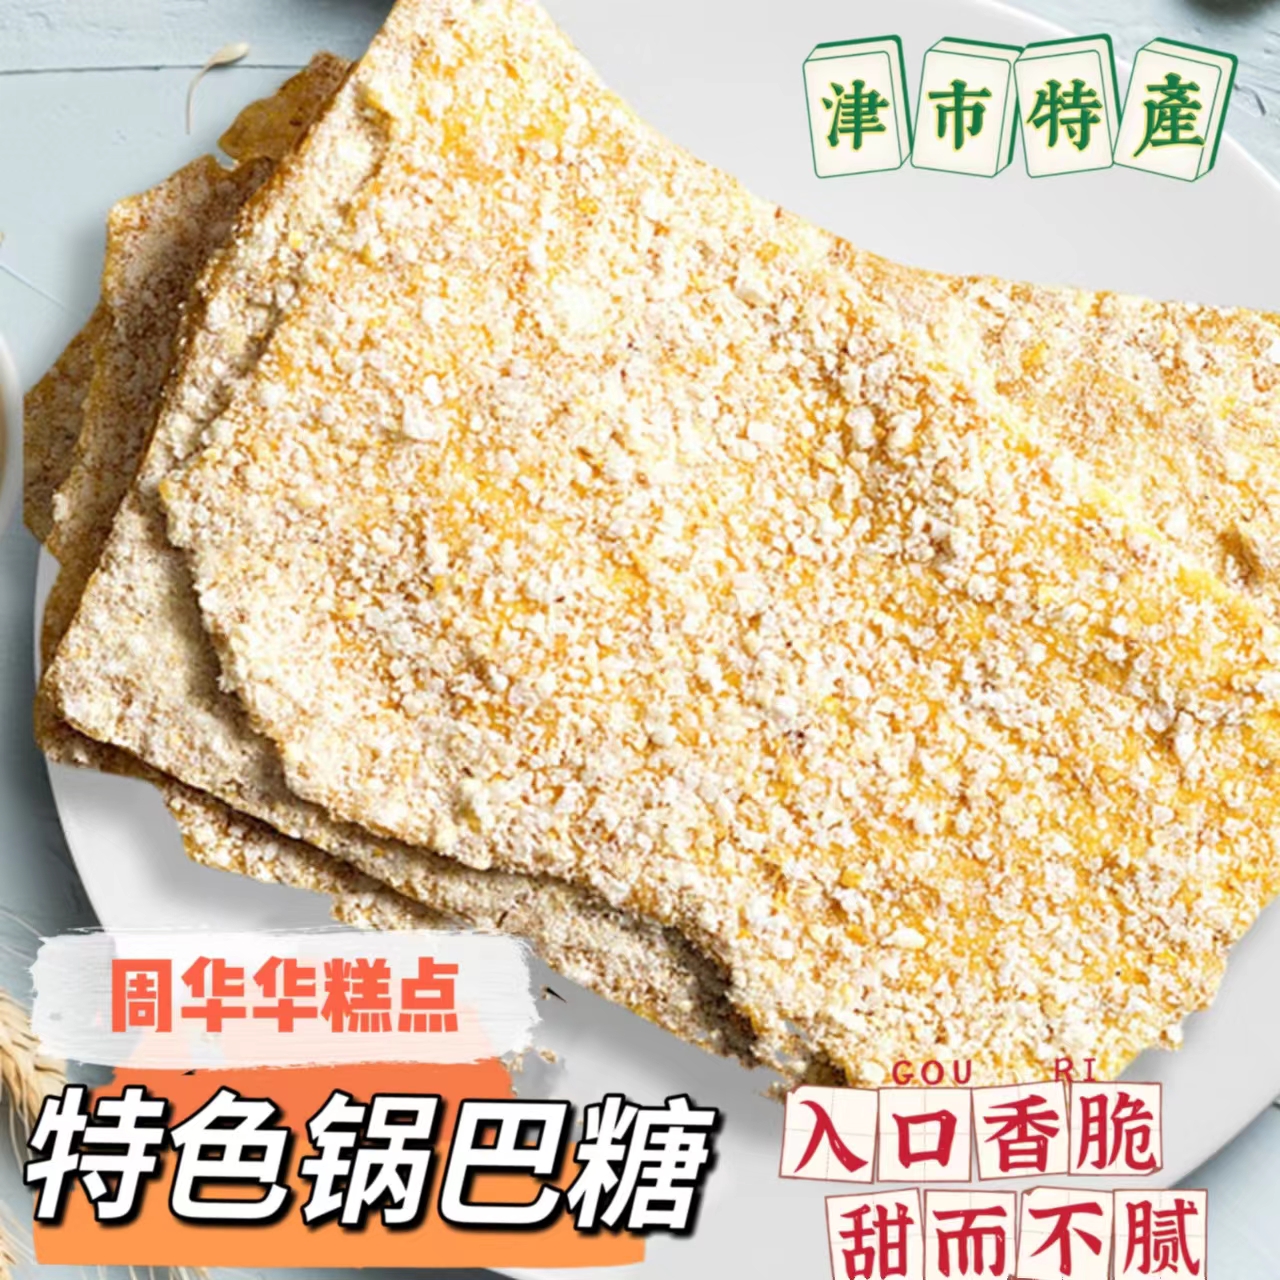 常德津市特产周华华糕点锅巴糖传统小吃盒装纯手工制作休闲零食